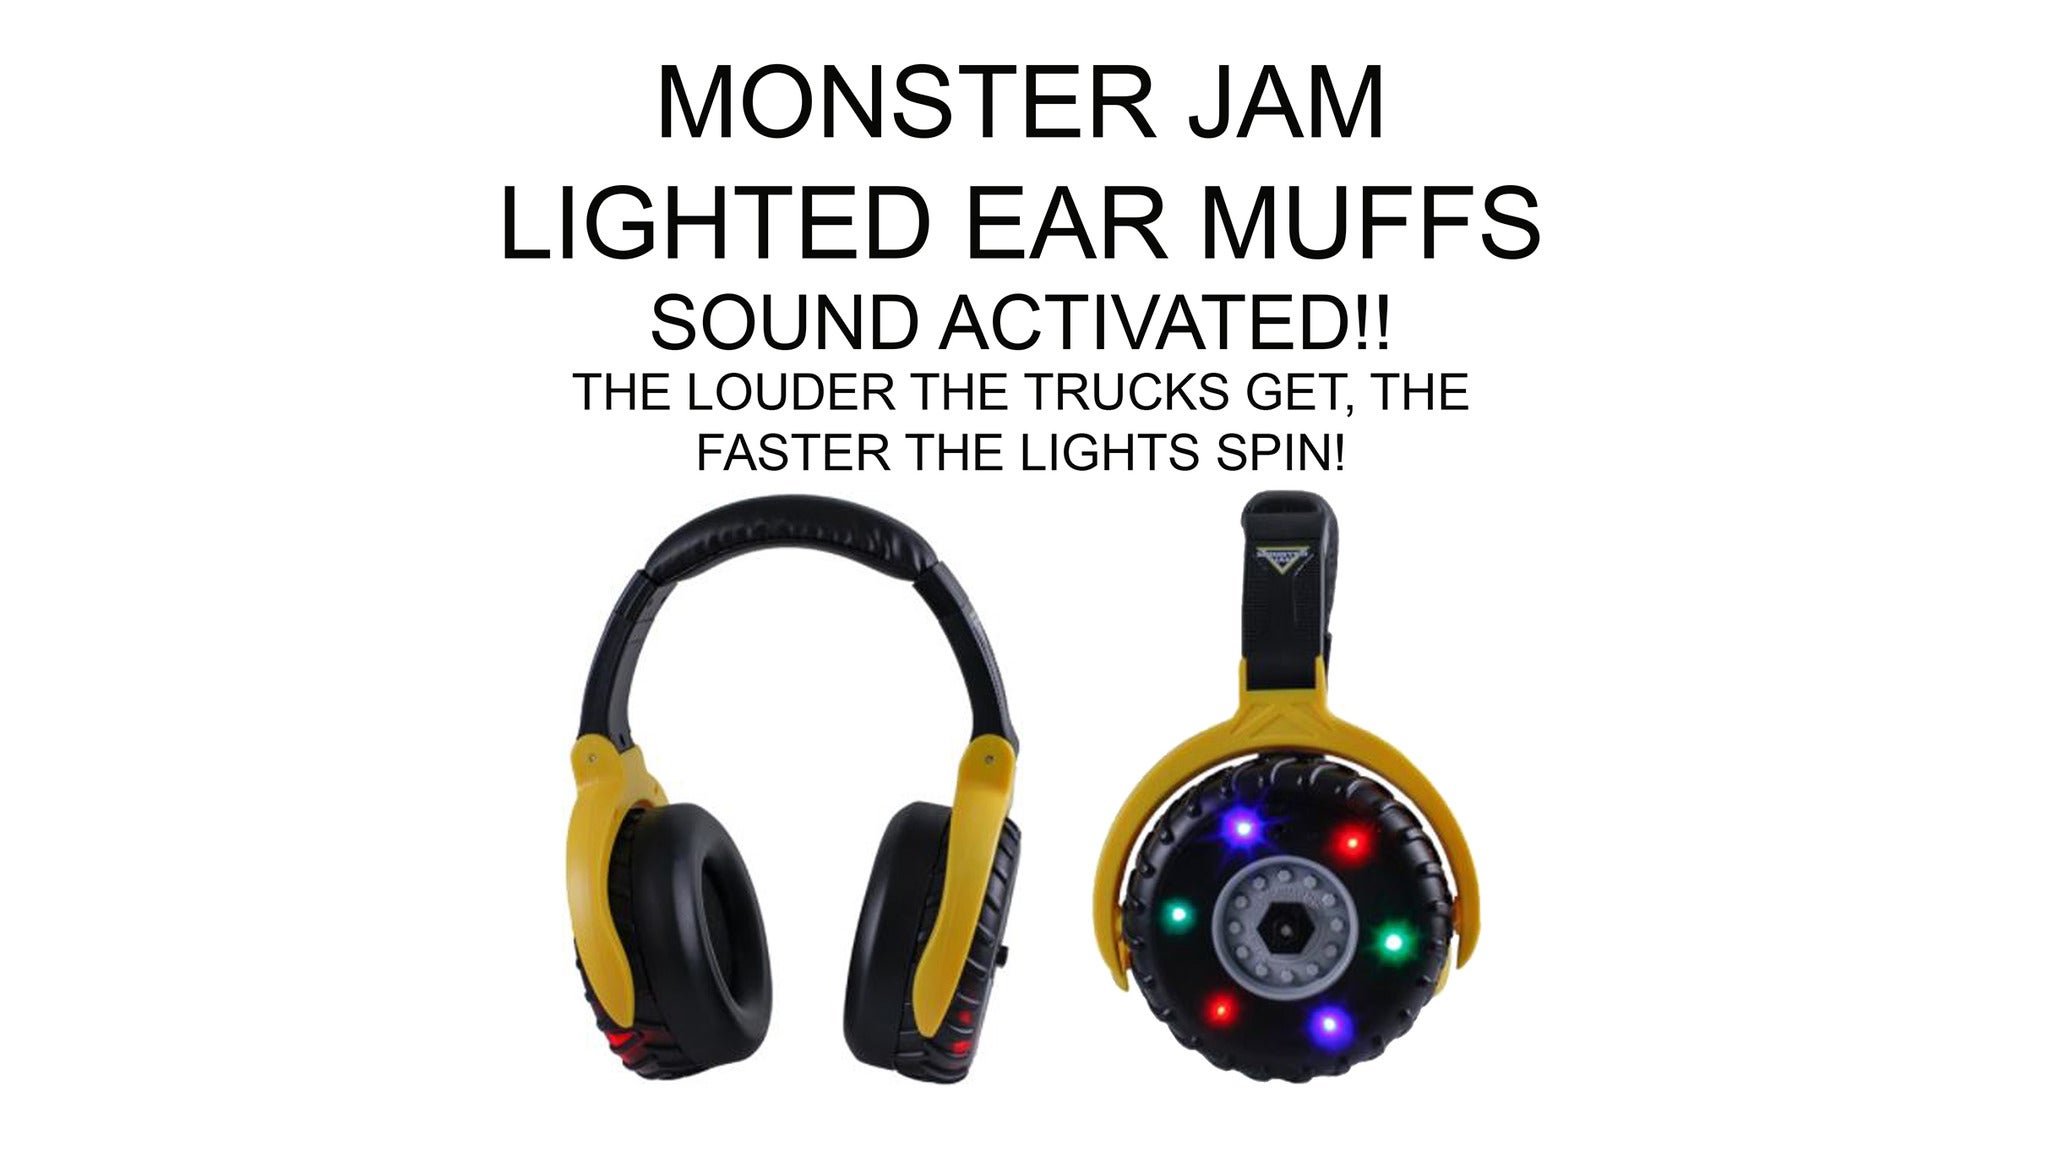 Monster Jam - Sound Activated Lighted Ear Muffs presale information on freepresalepasswords.com